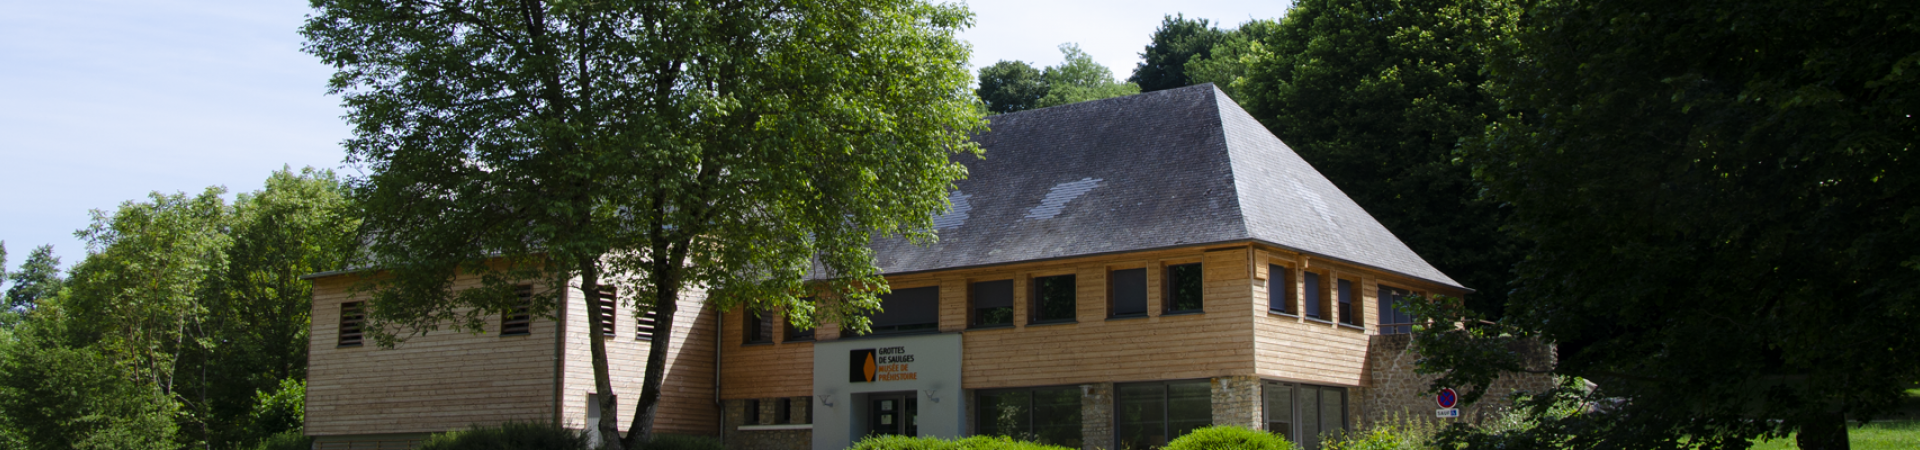 Musée de préhistoire à Saulges en Mayenne